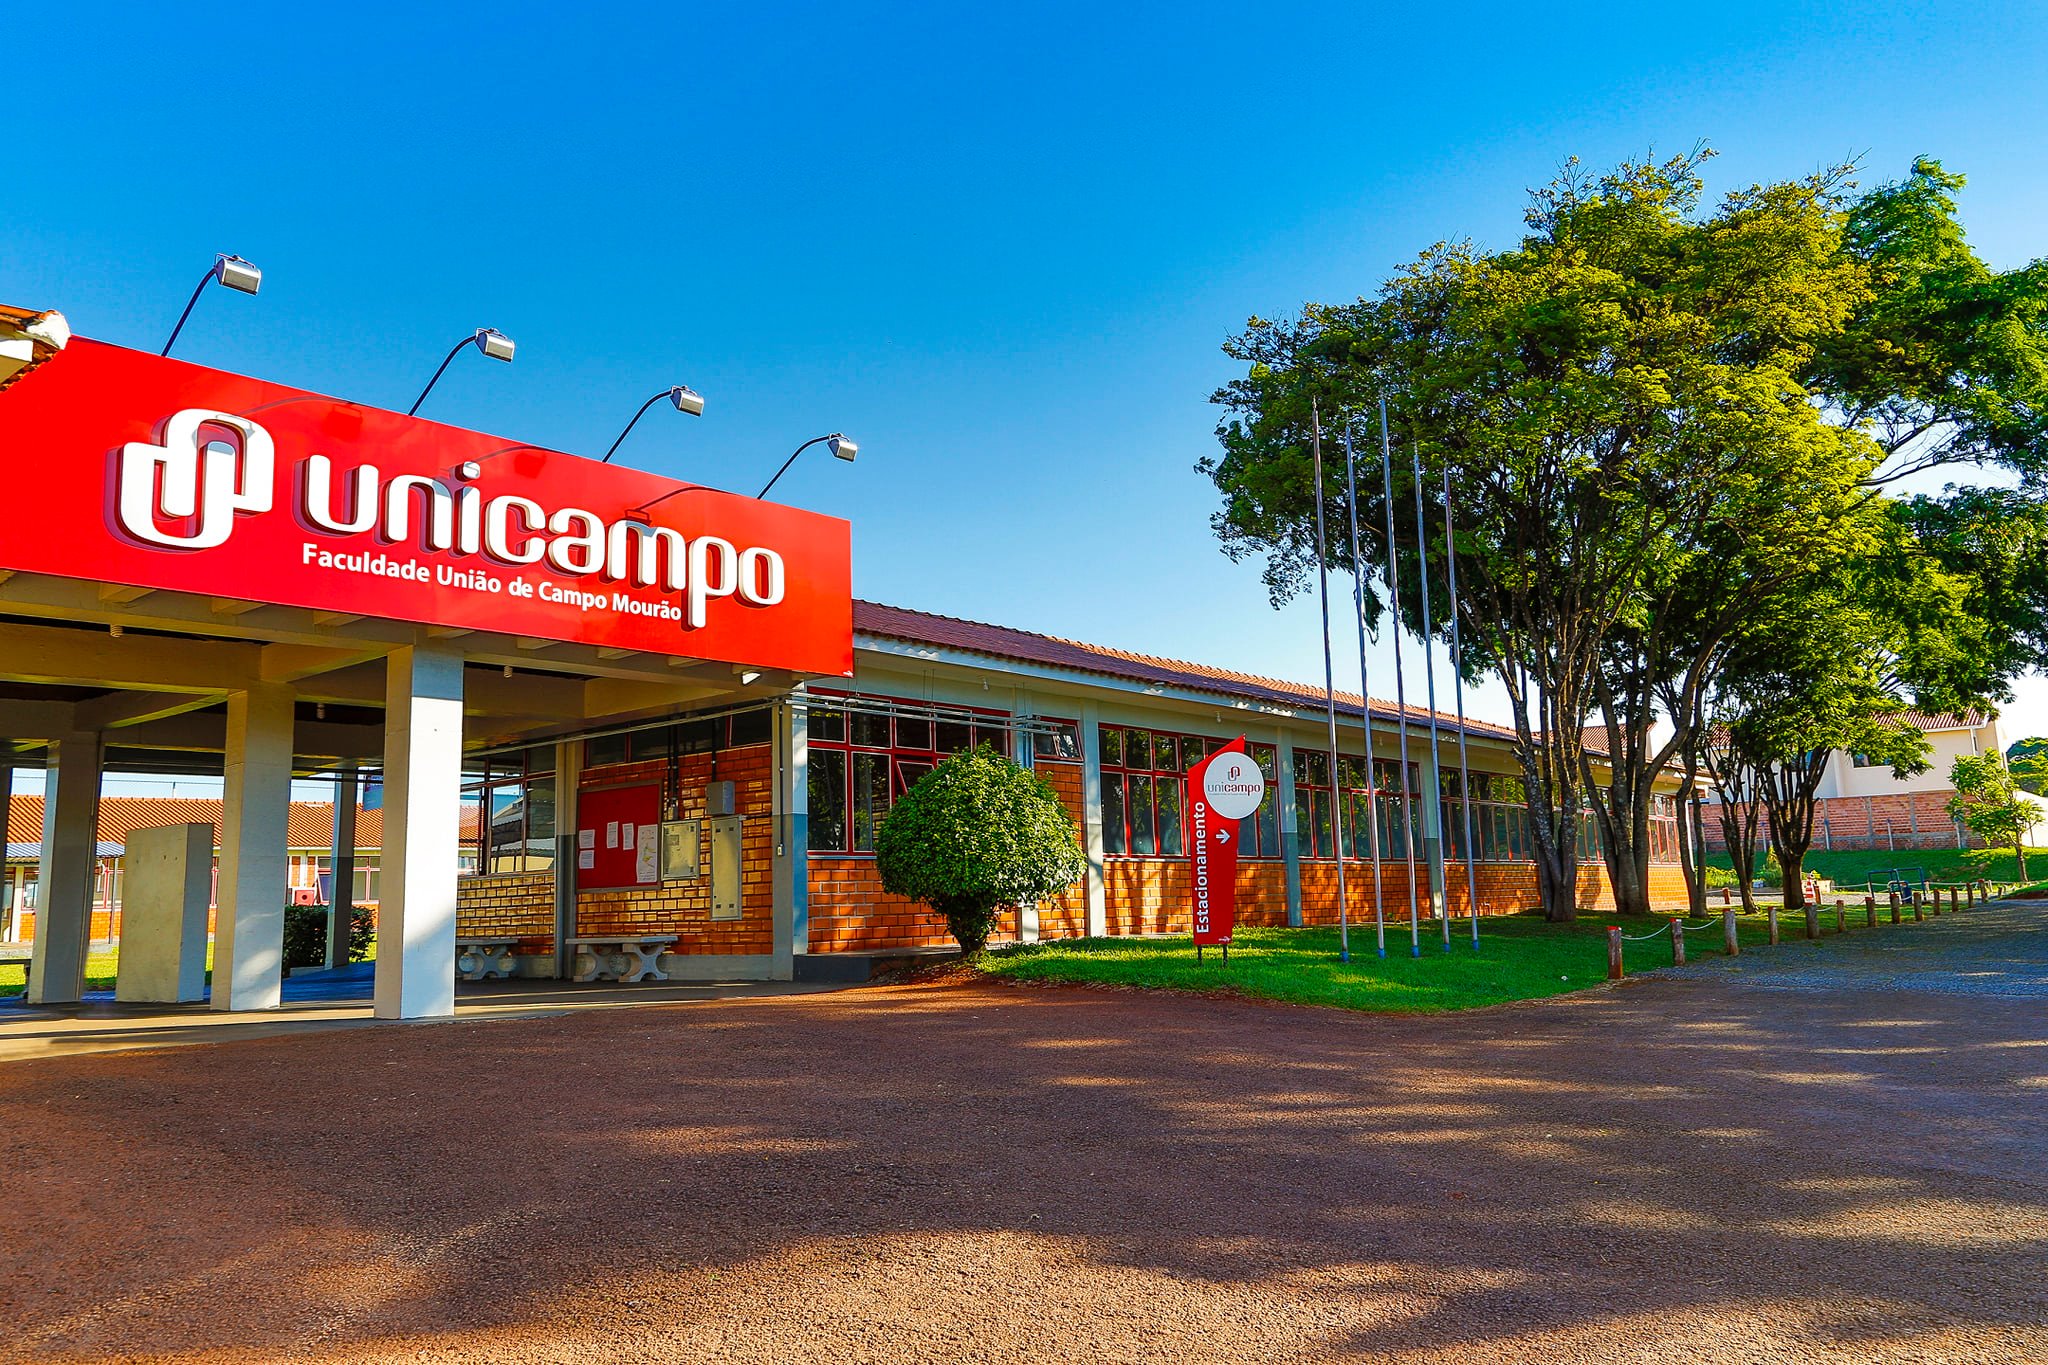 Faculdade Unicampo promove Unigincana com premiação de até 30% para alunos do Ensino médio